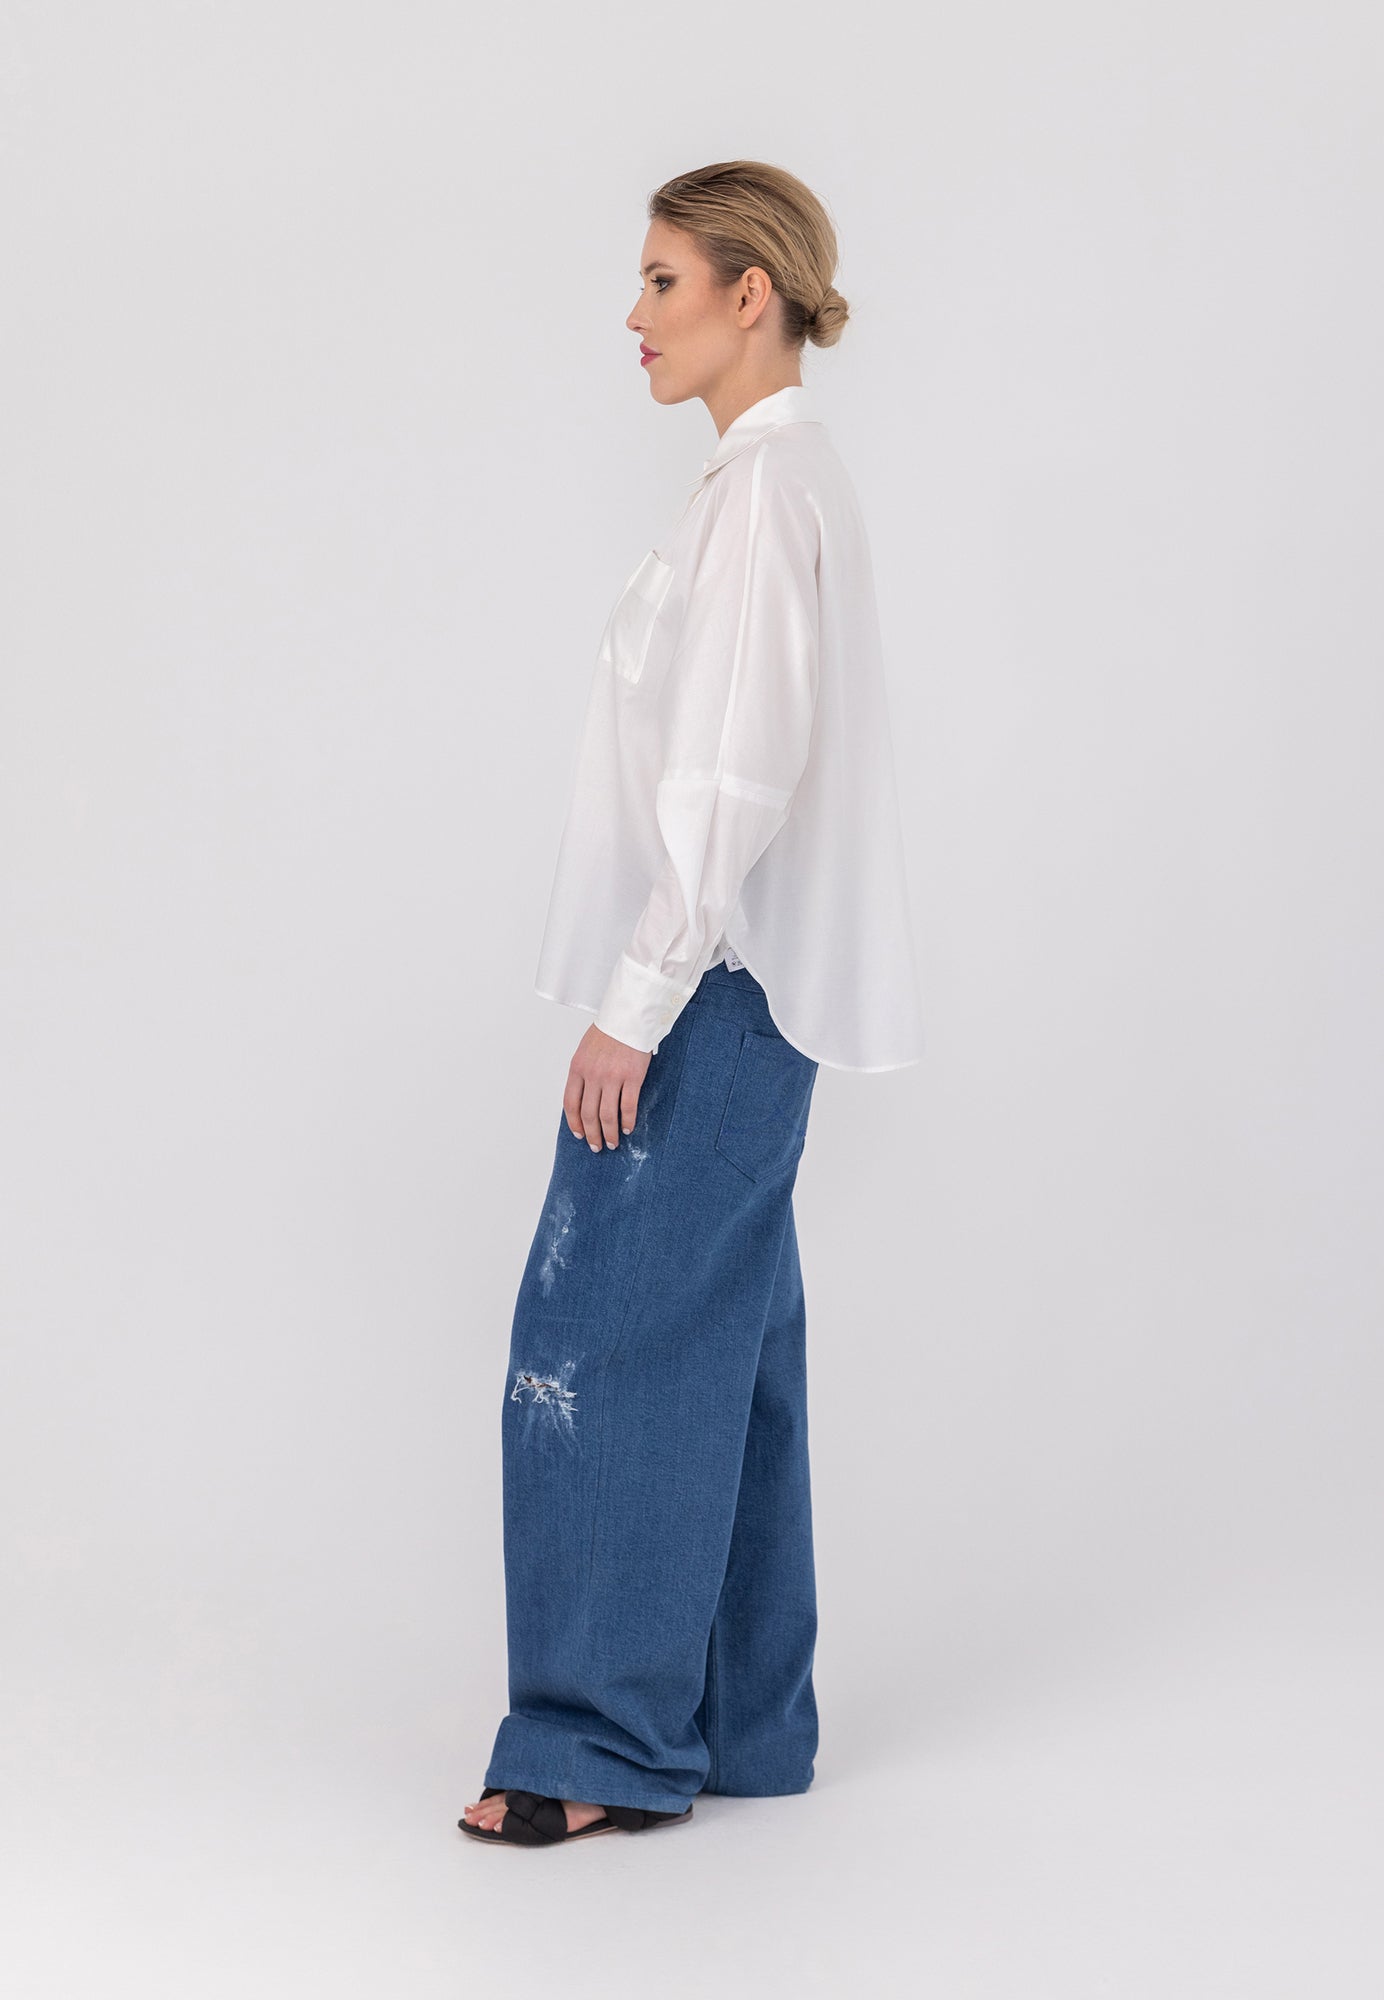 Oversize Bluse aus hochwertige Baumwolle, praktischer Brusttasche und subtilen Biesen-Falten